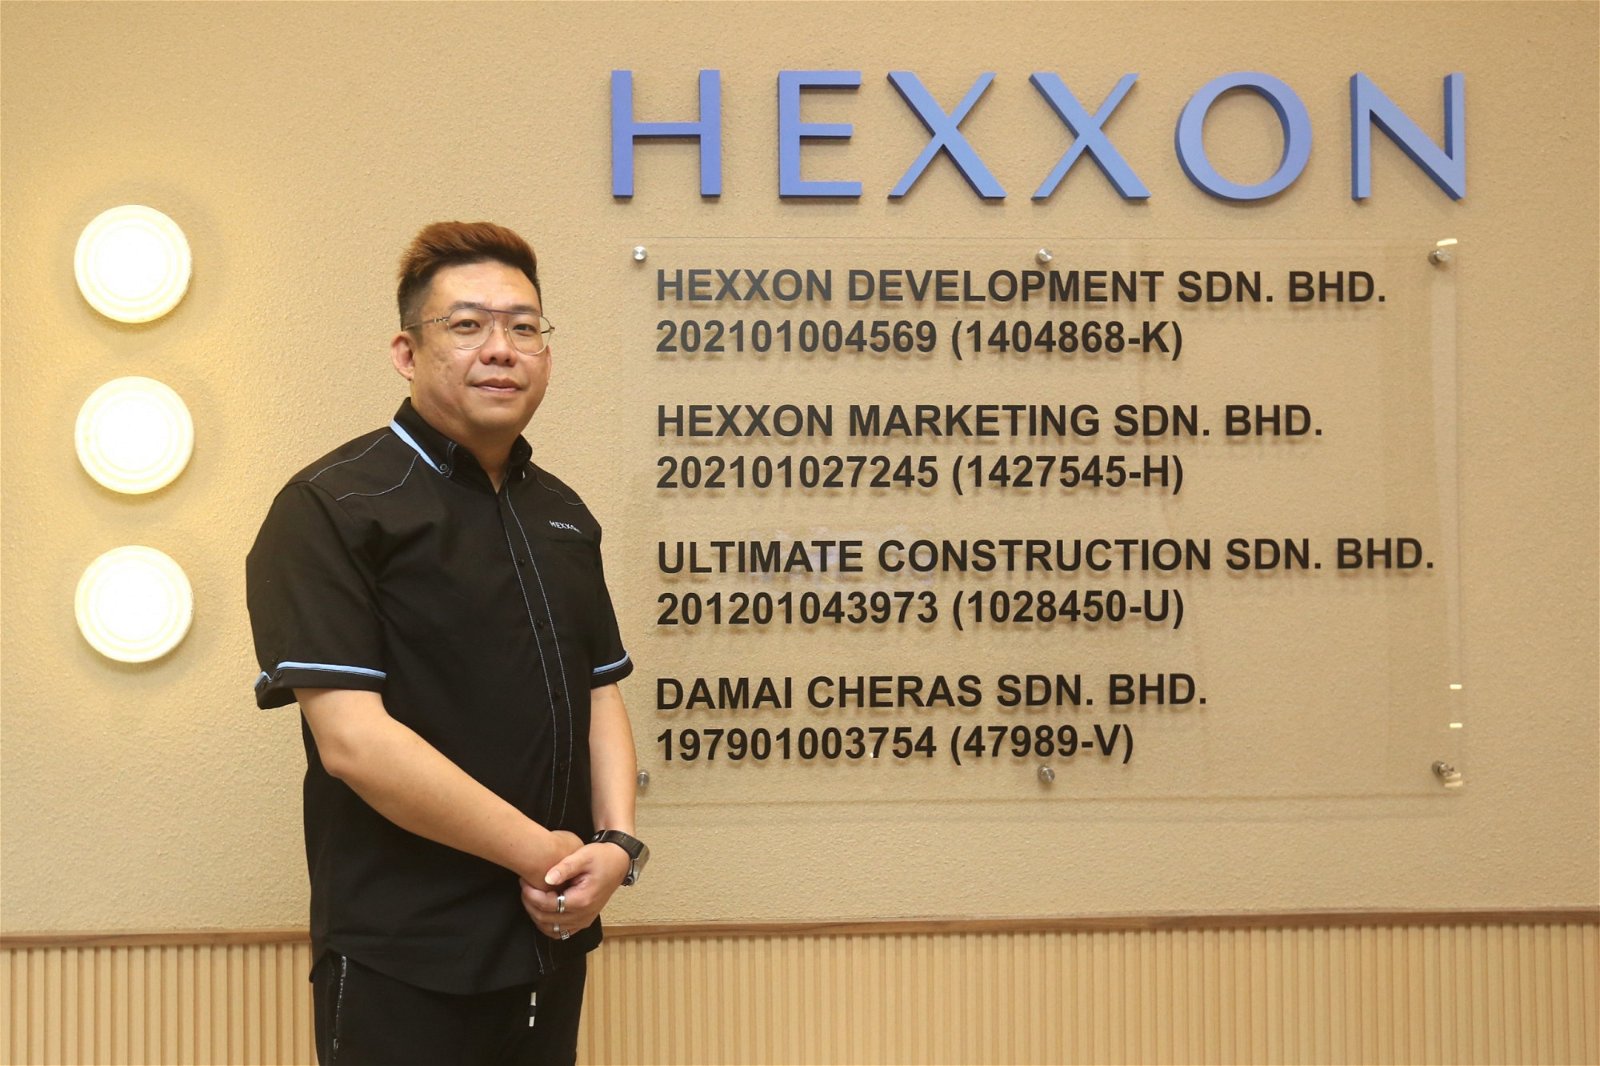 Hexxon 市场总监余京鸿在采访中分享了公司在产业界超过 30 年的经验和数十个成功项目的成就，强调了对新项目的信心和期许。